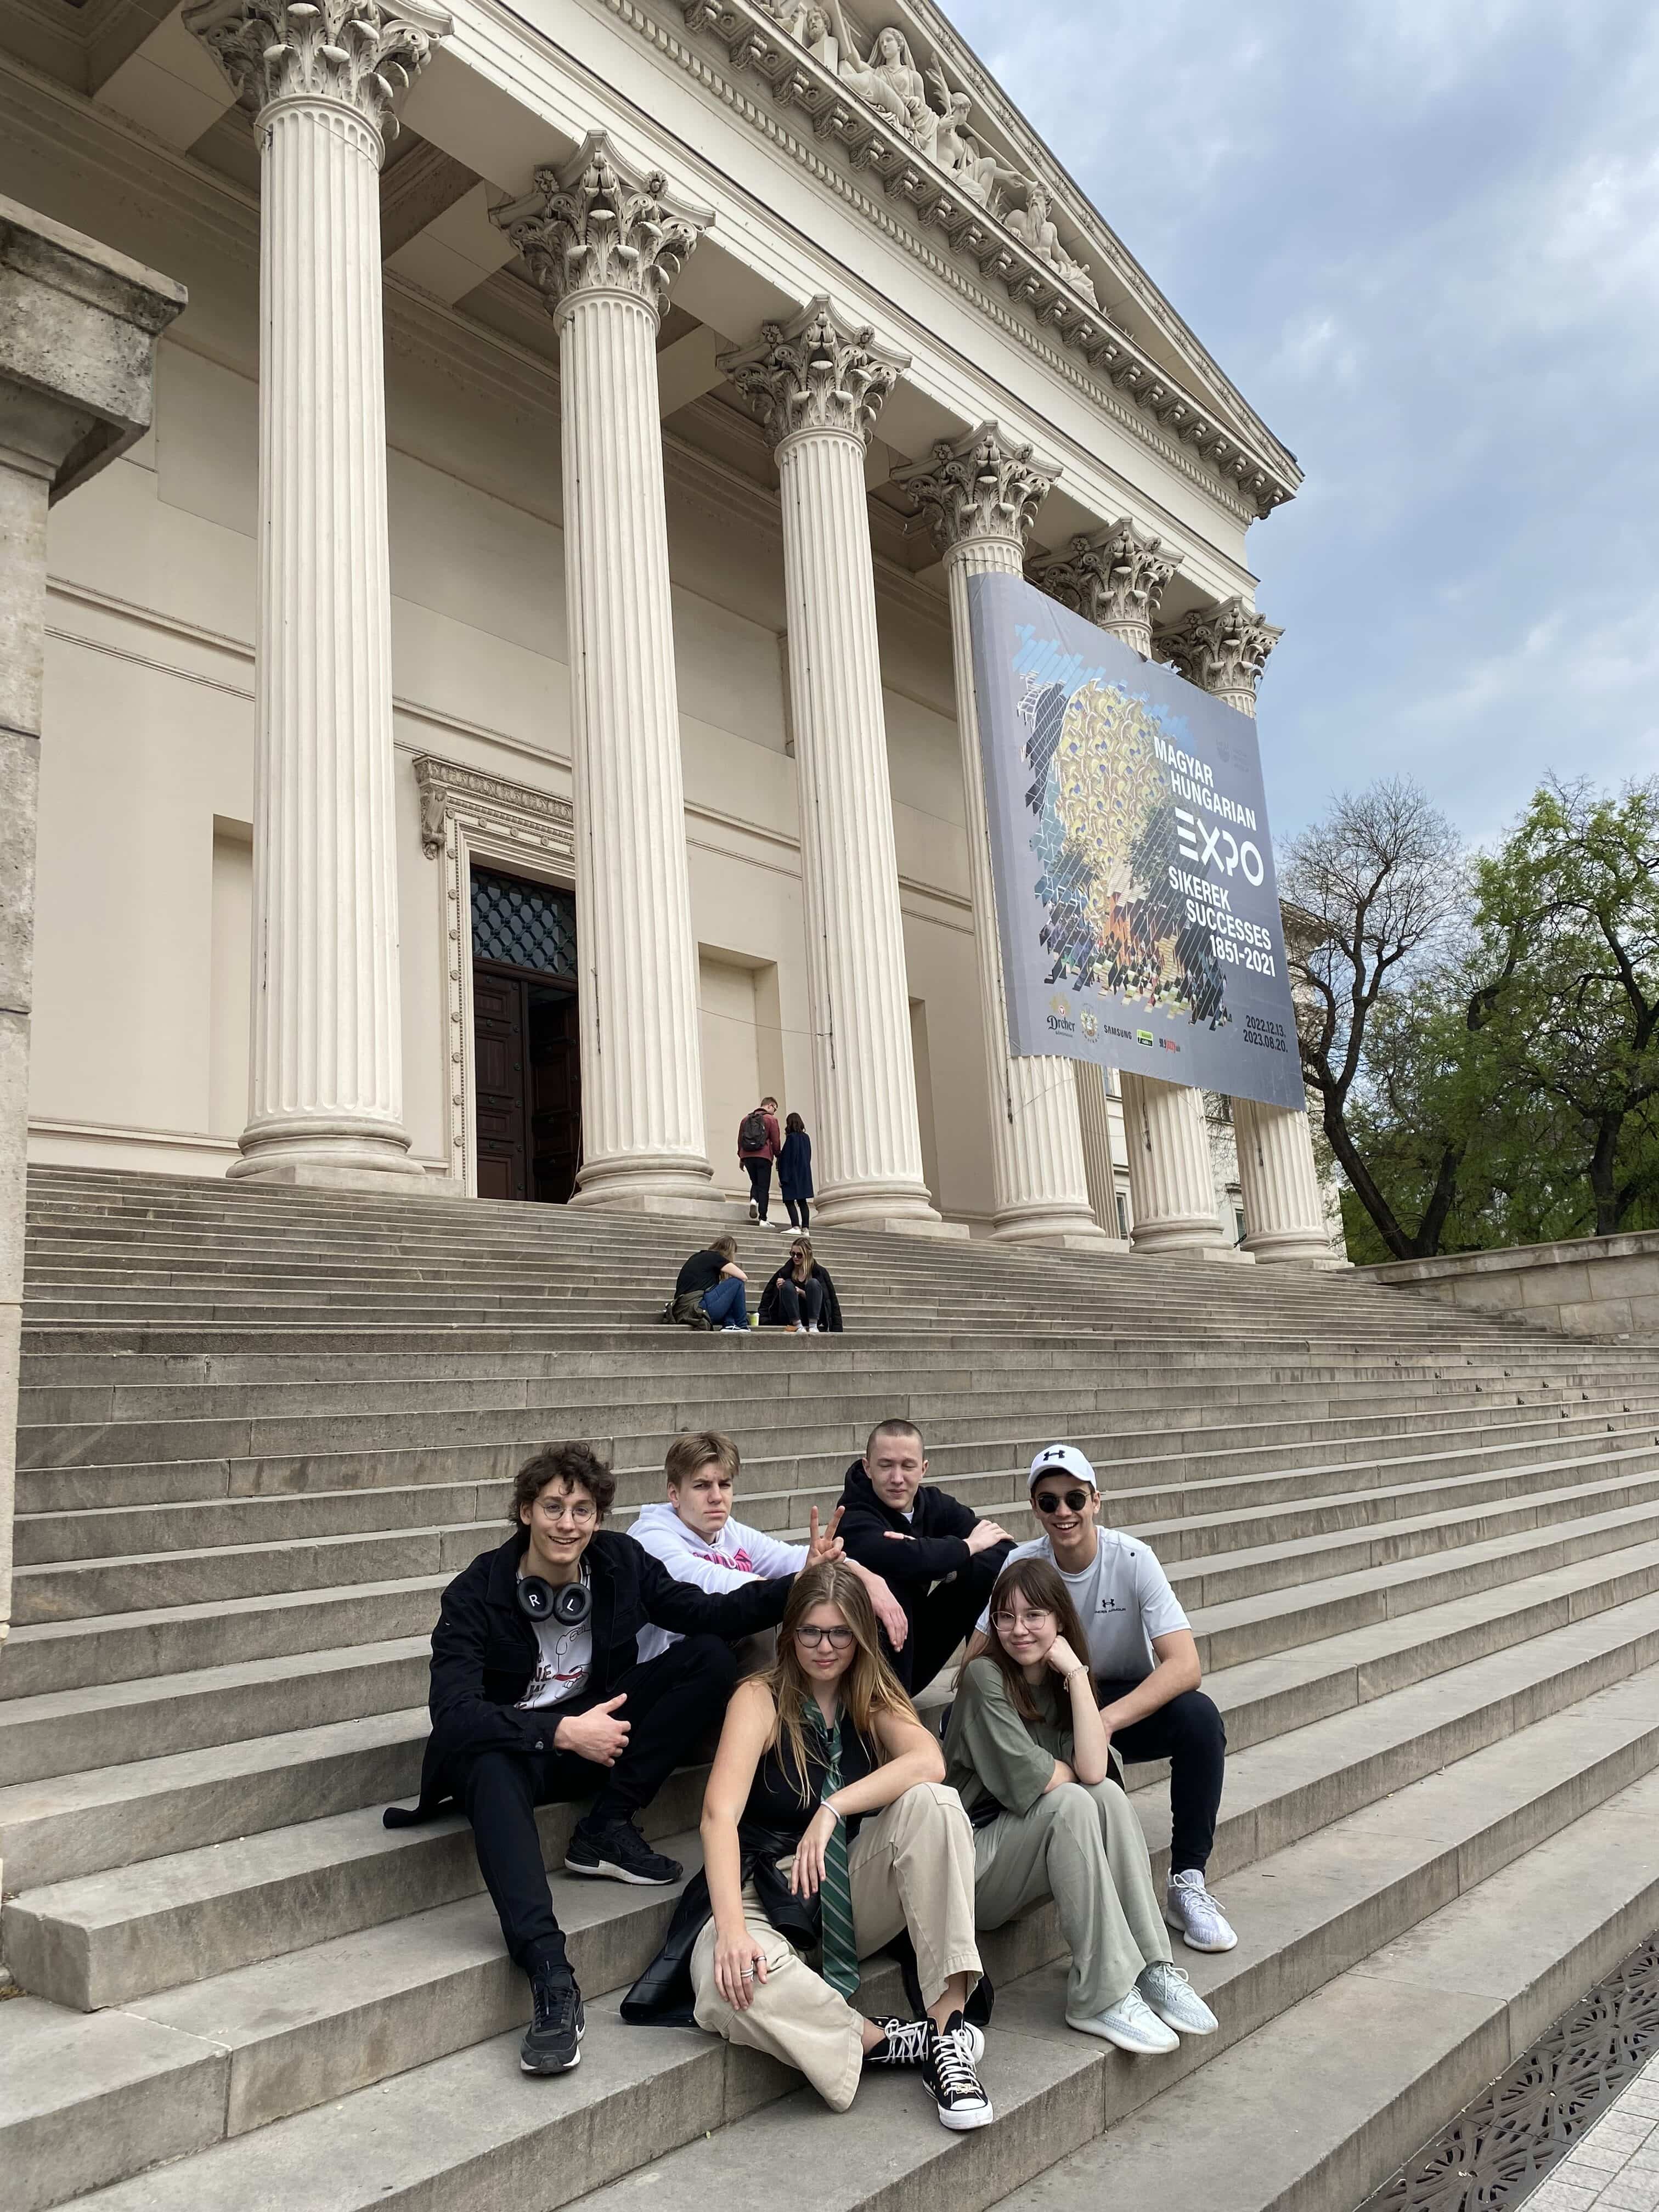 SKIS Grade 9 explores Budapest (April 21st-23rd)